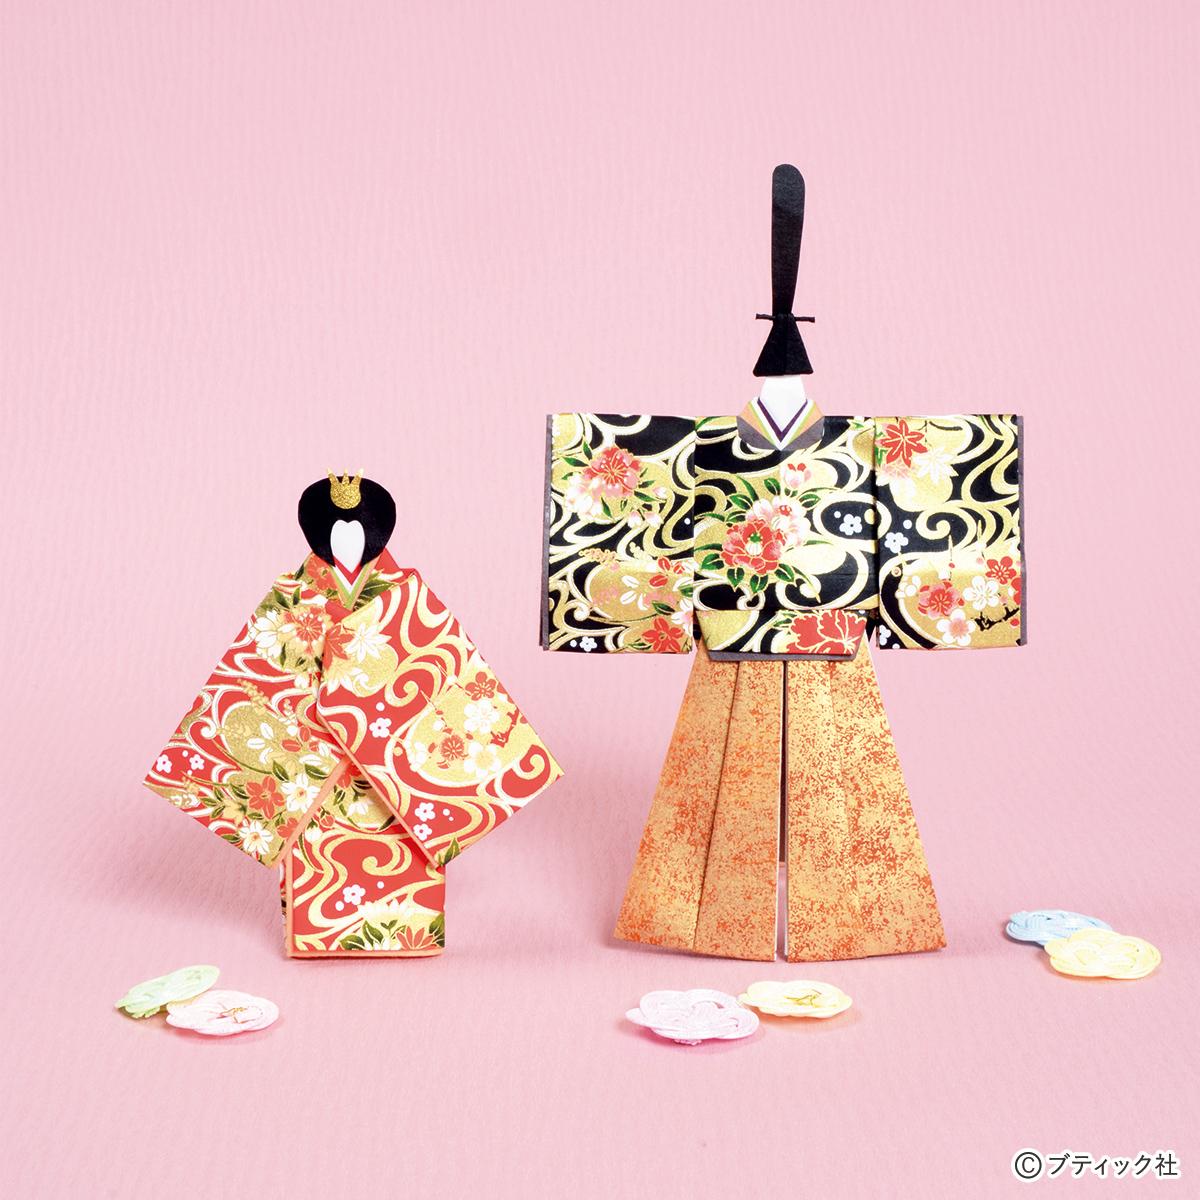 和紙の小さなお飾り 雪洞 雛人形 国産 日本製 桃の節句 めでたや遊び ぼんぼり薄紅